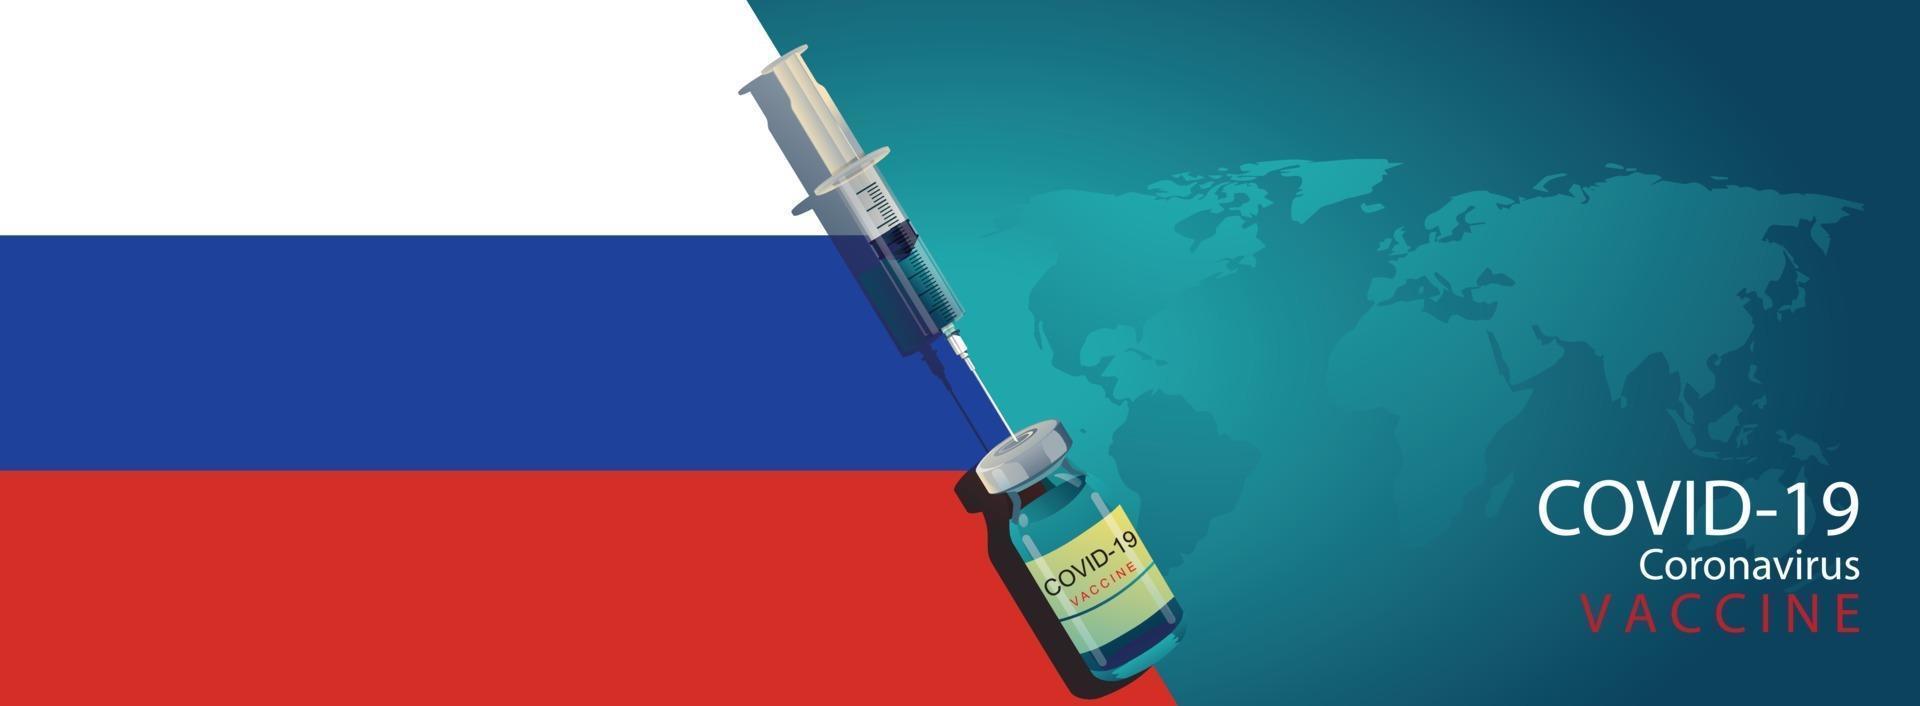 ryska forskargruppen upptäckte vaccinkonceptet covid-19. vaccinutveckling redo för behandling illustration, vektor platt design